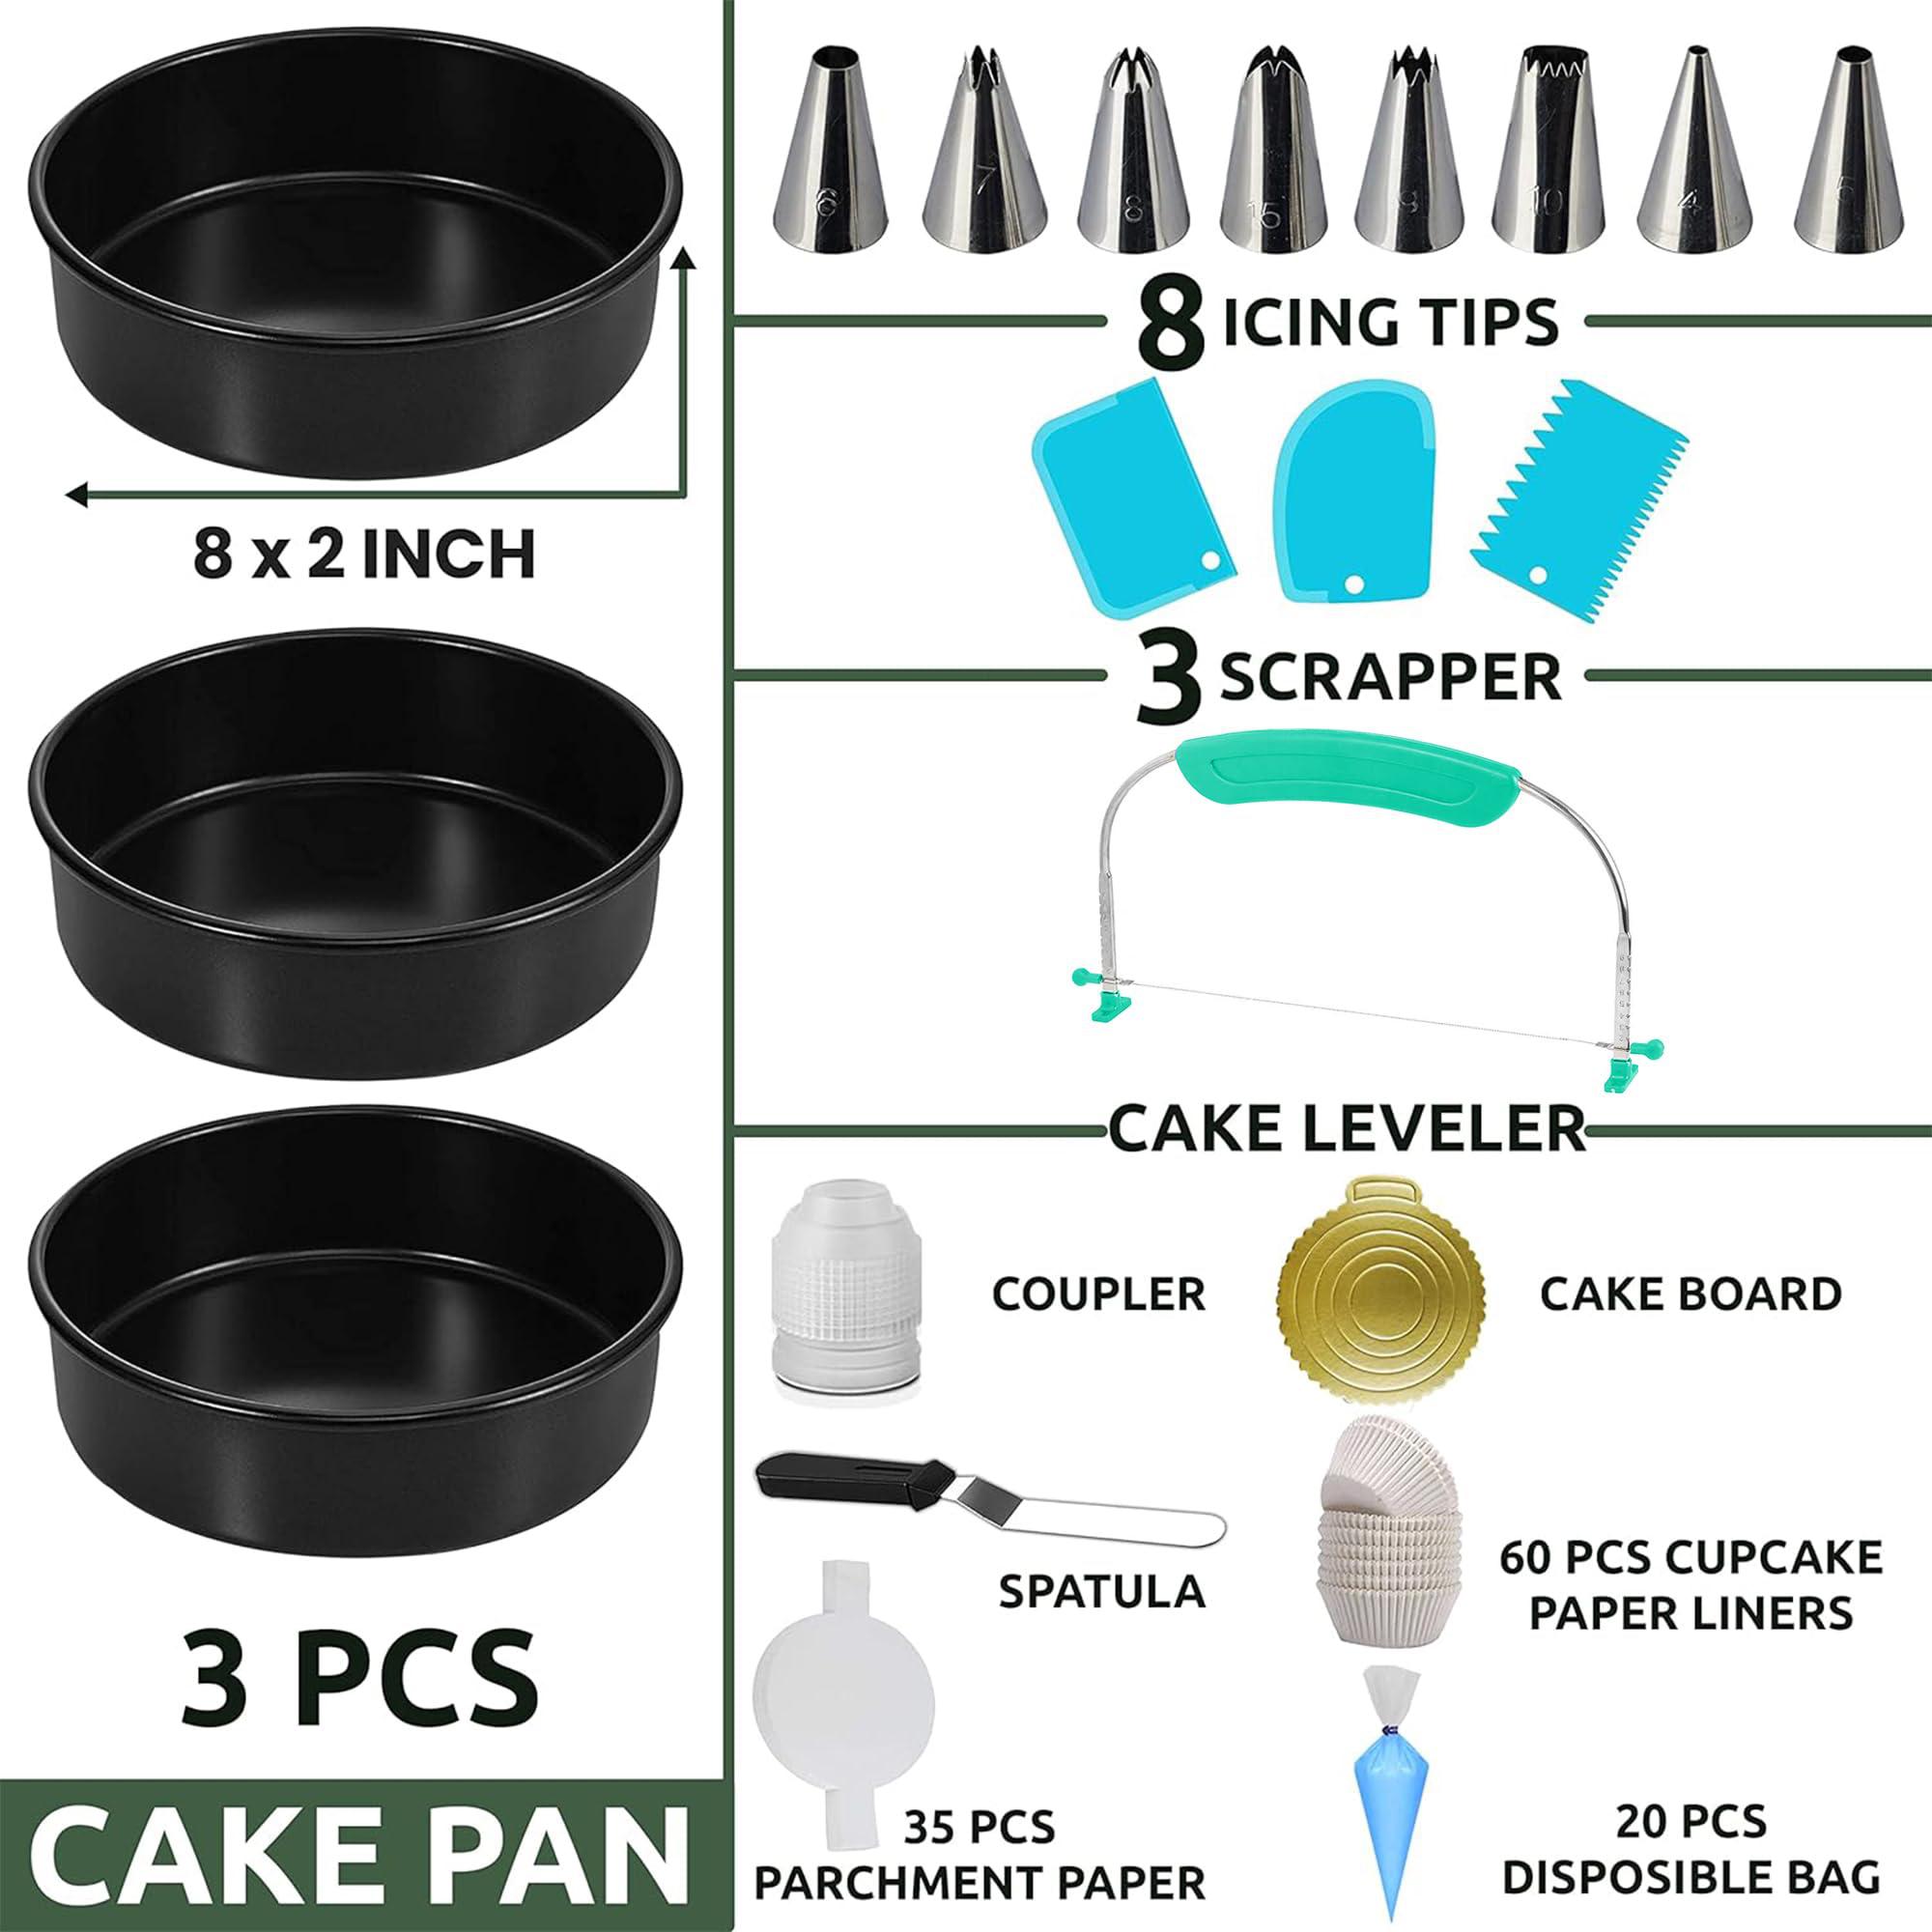 rfaqk 133pcs round cake pans sets for baking-nonstick 8 inch cake pan set of 3 with baking supplies+cake decorating supplies 